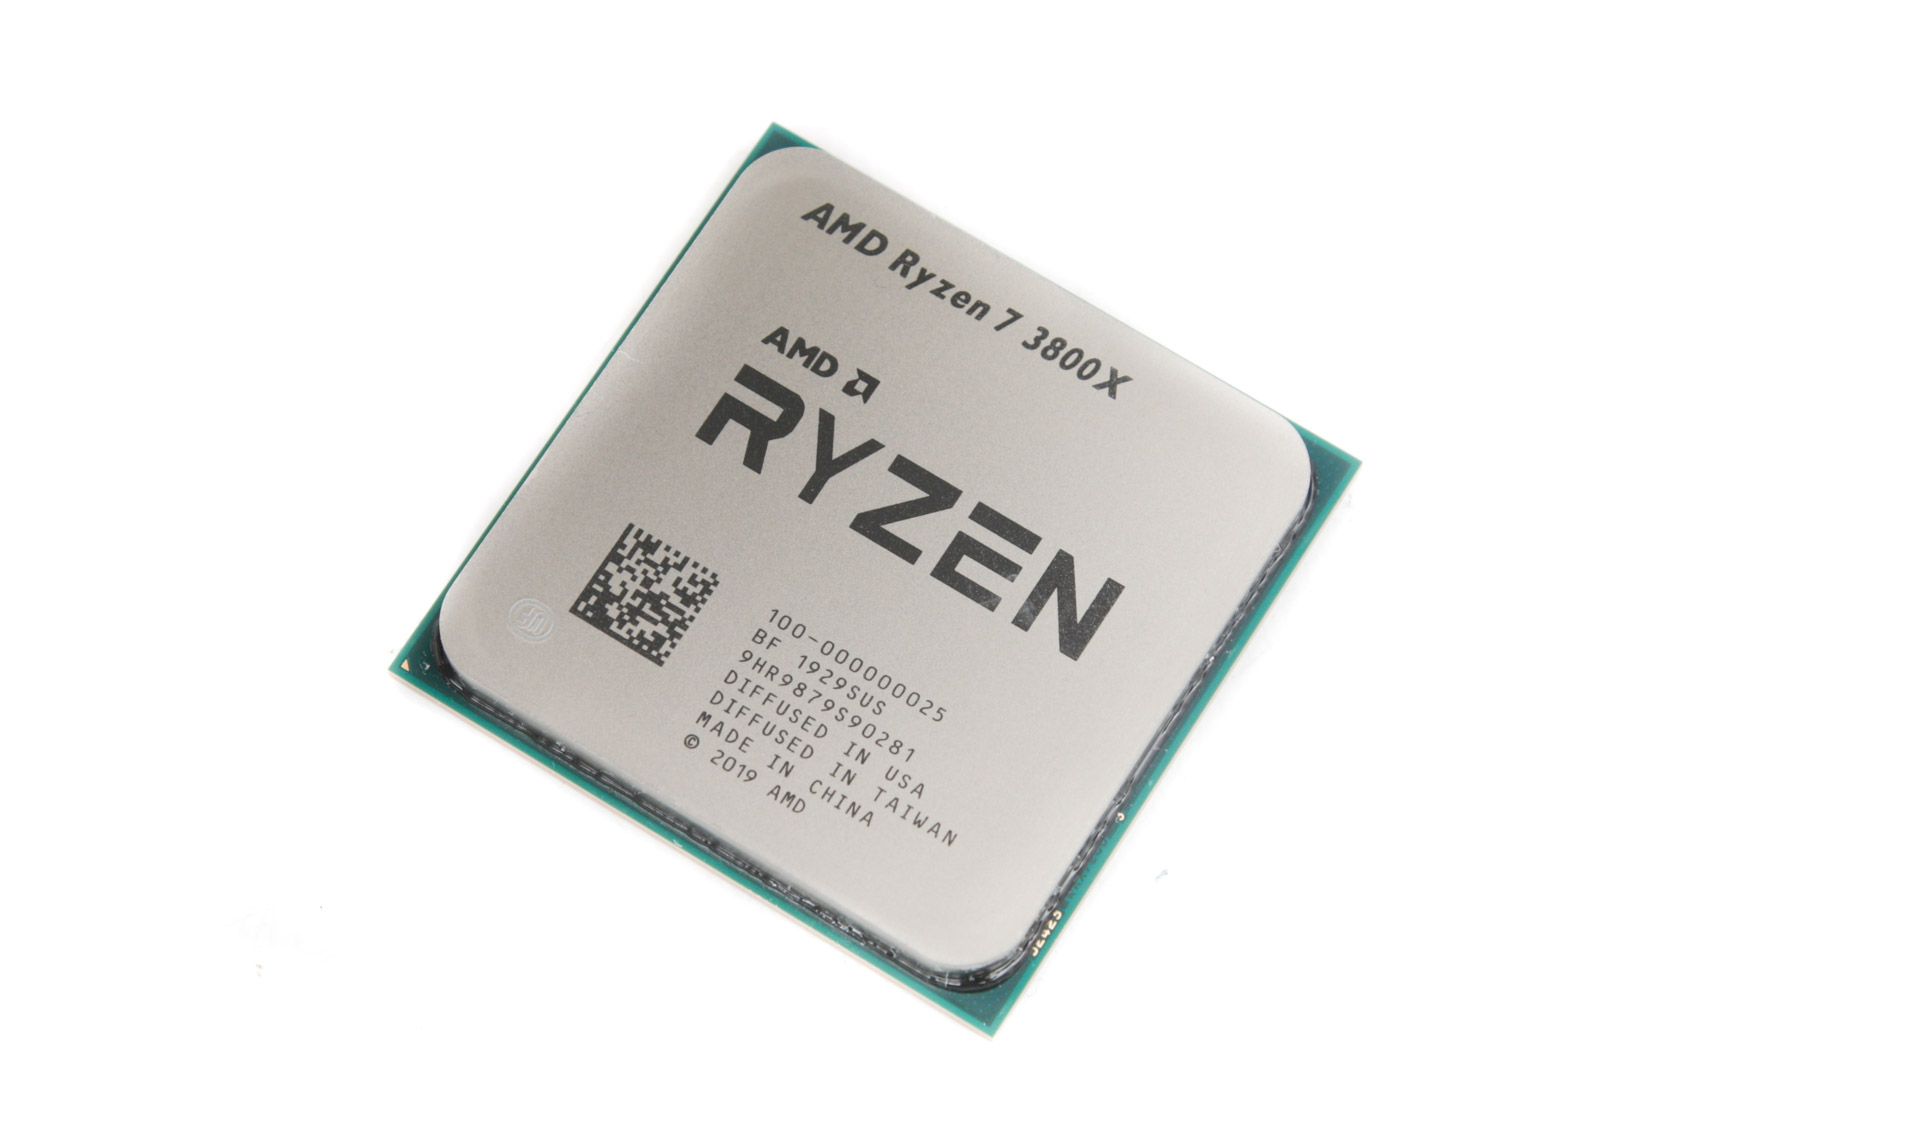 1400 процессор. Ryzen 5 1400. К процессор AMD Ryzen 5 1400 Quad-Core Processor системой охлаждения. R5 1400 Box. AMD Ryzen 5 1400 am4, 4 x 3200 МГЦ.